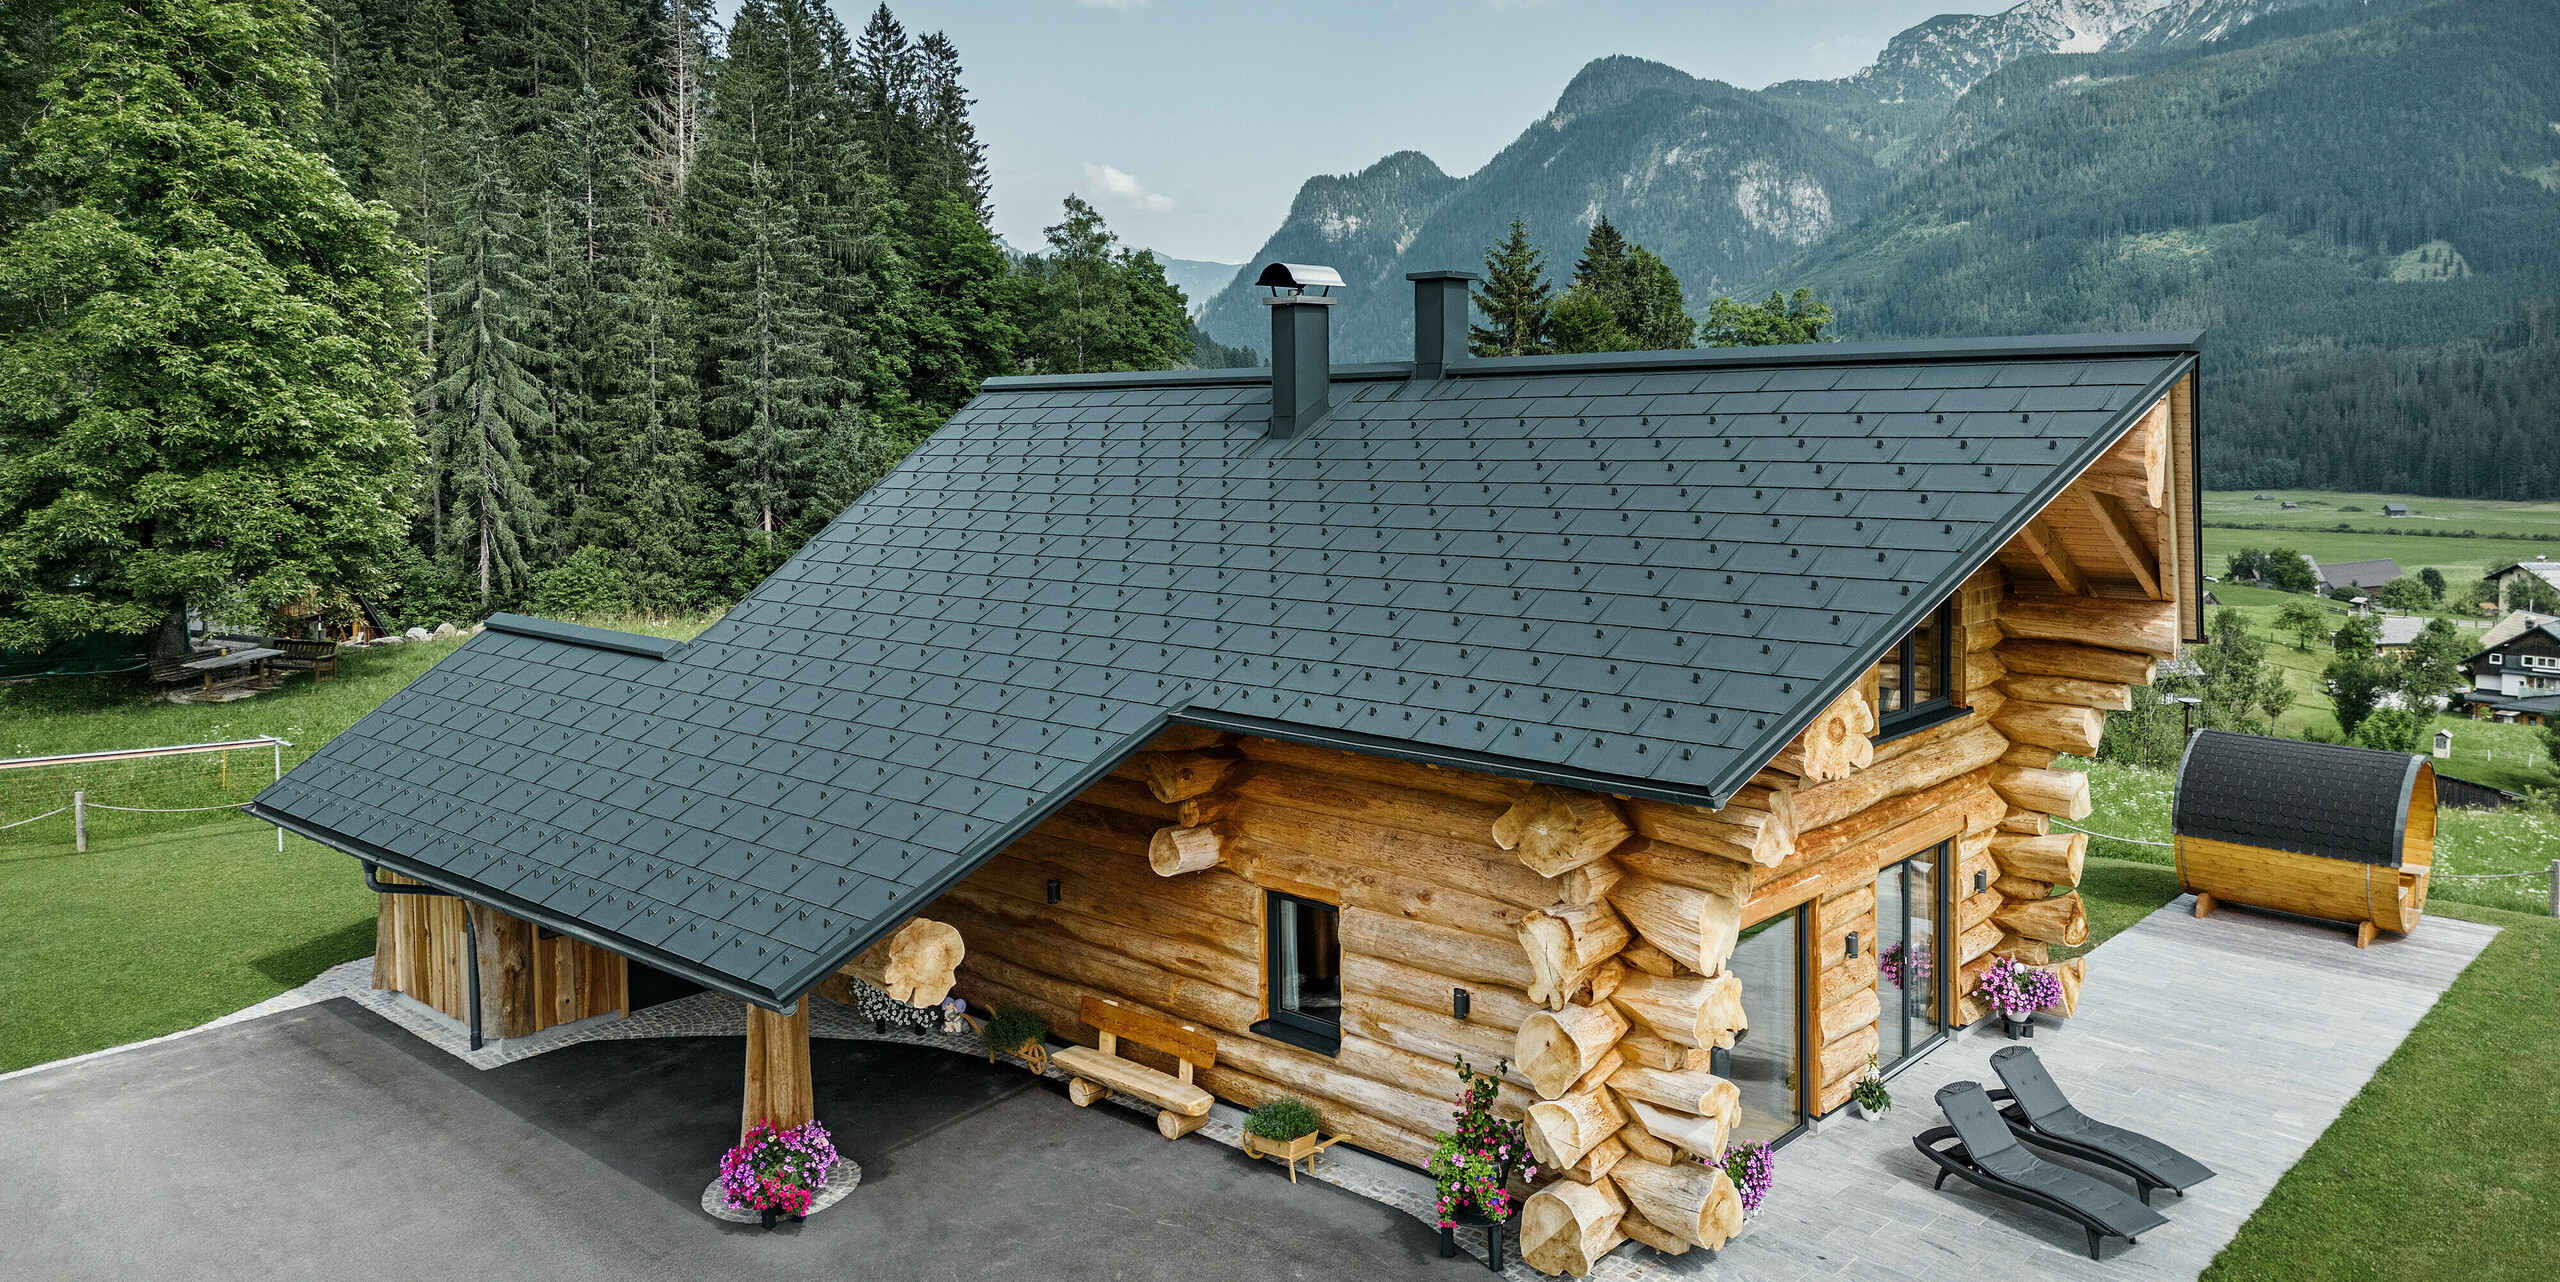 Poševni pogled na slikovito brunarico v Gosau-u v Avstriji, opremljeno s PREFA streho iz antracitnih strešnih plošč R.16. Arhitektura združuje rustikalni pridih brunarice s sodobnimi elementi, obdana z gostimi zelenimi gozdovi in impresivno gorsko kuliso. Hiša s svojo podeželsko eleganco in natančno položenimi aluminijastimi strešnimi elementi, ki so znani po svoji trpežnosti in odpornosti na vremenske vplive, izžareva vabljivo vzdušje. 